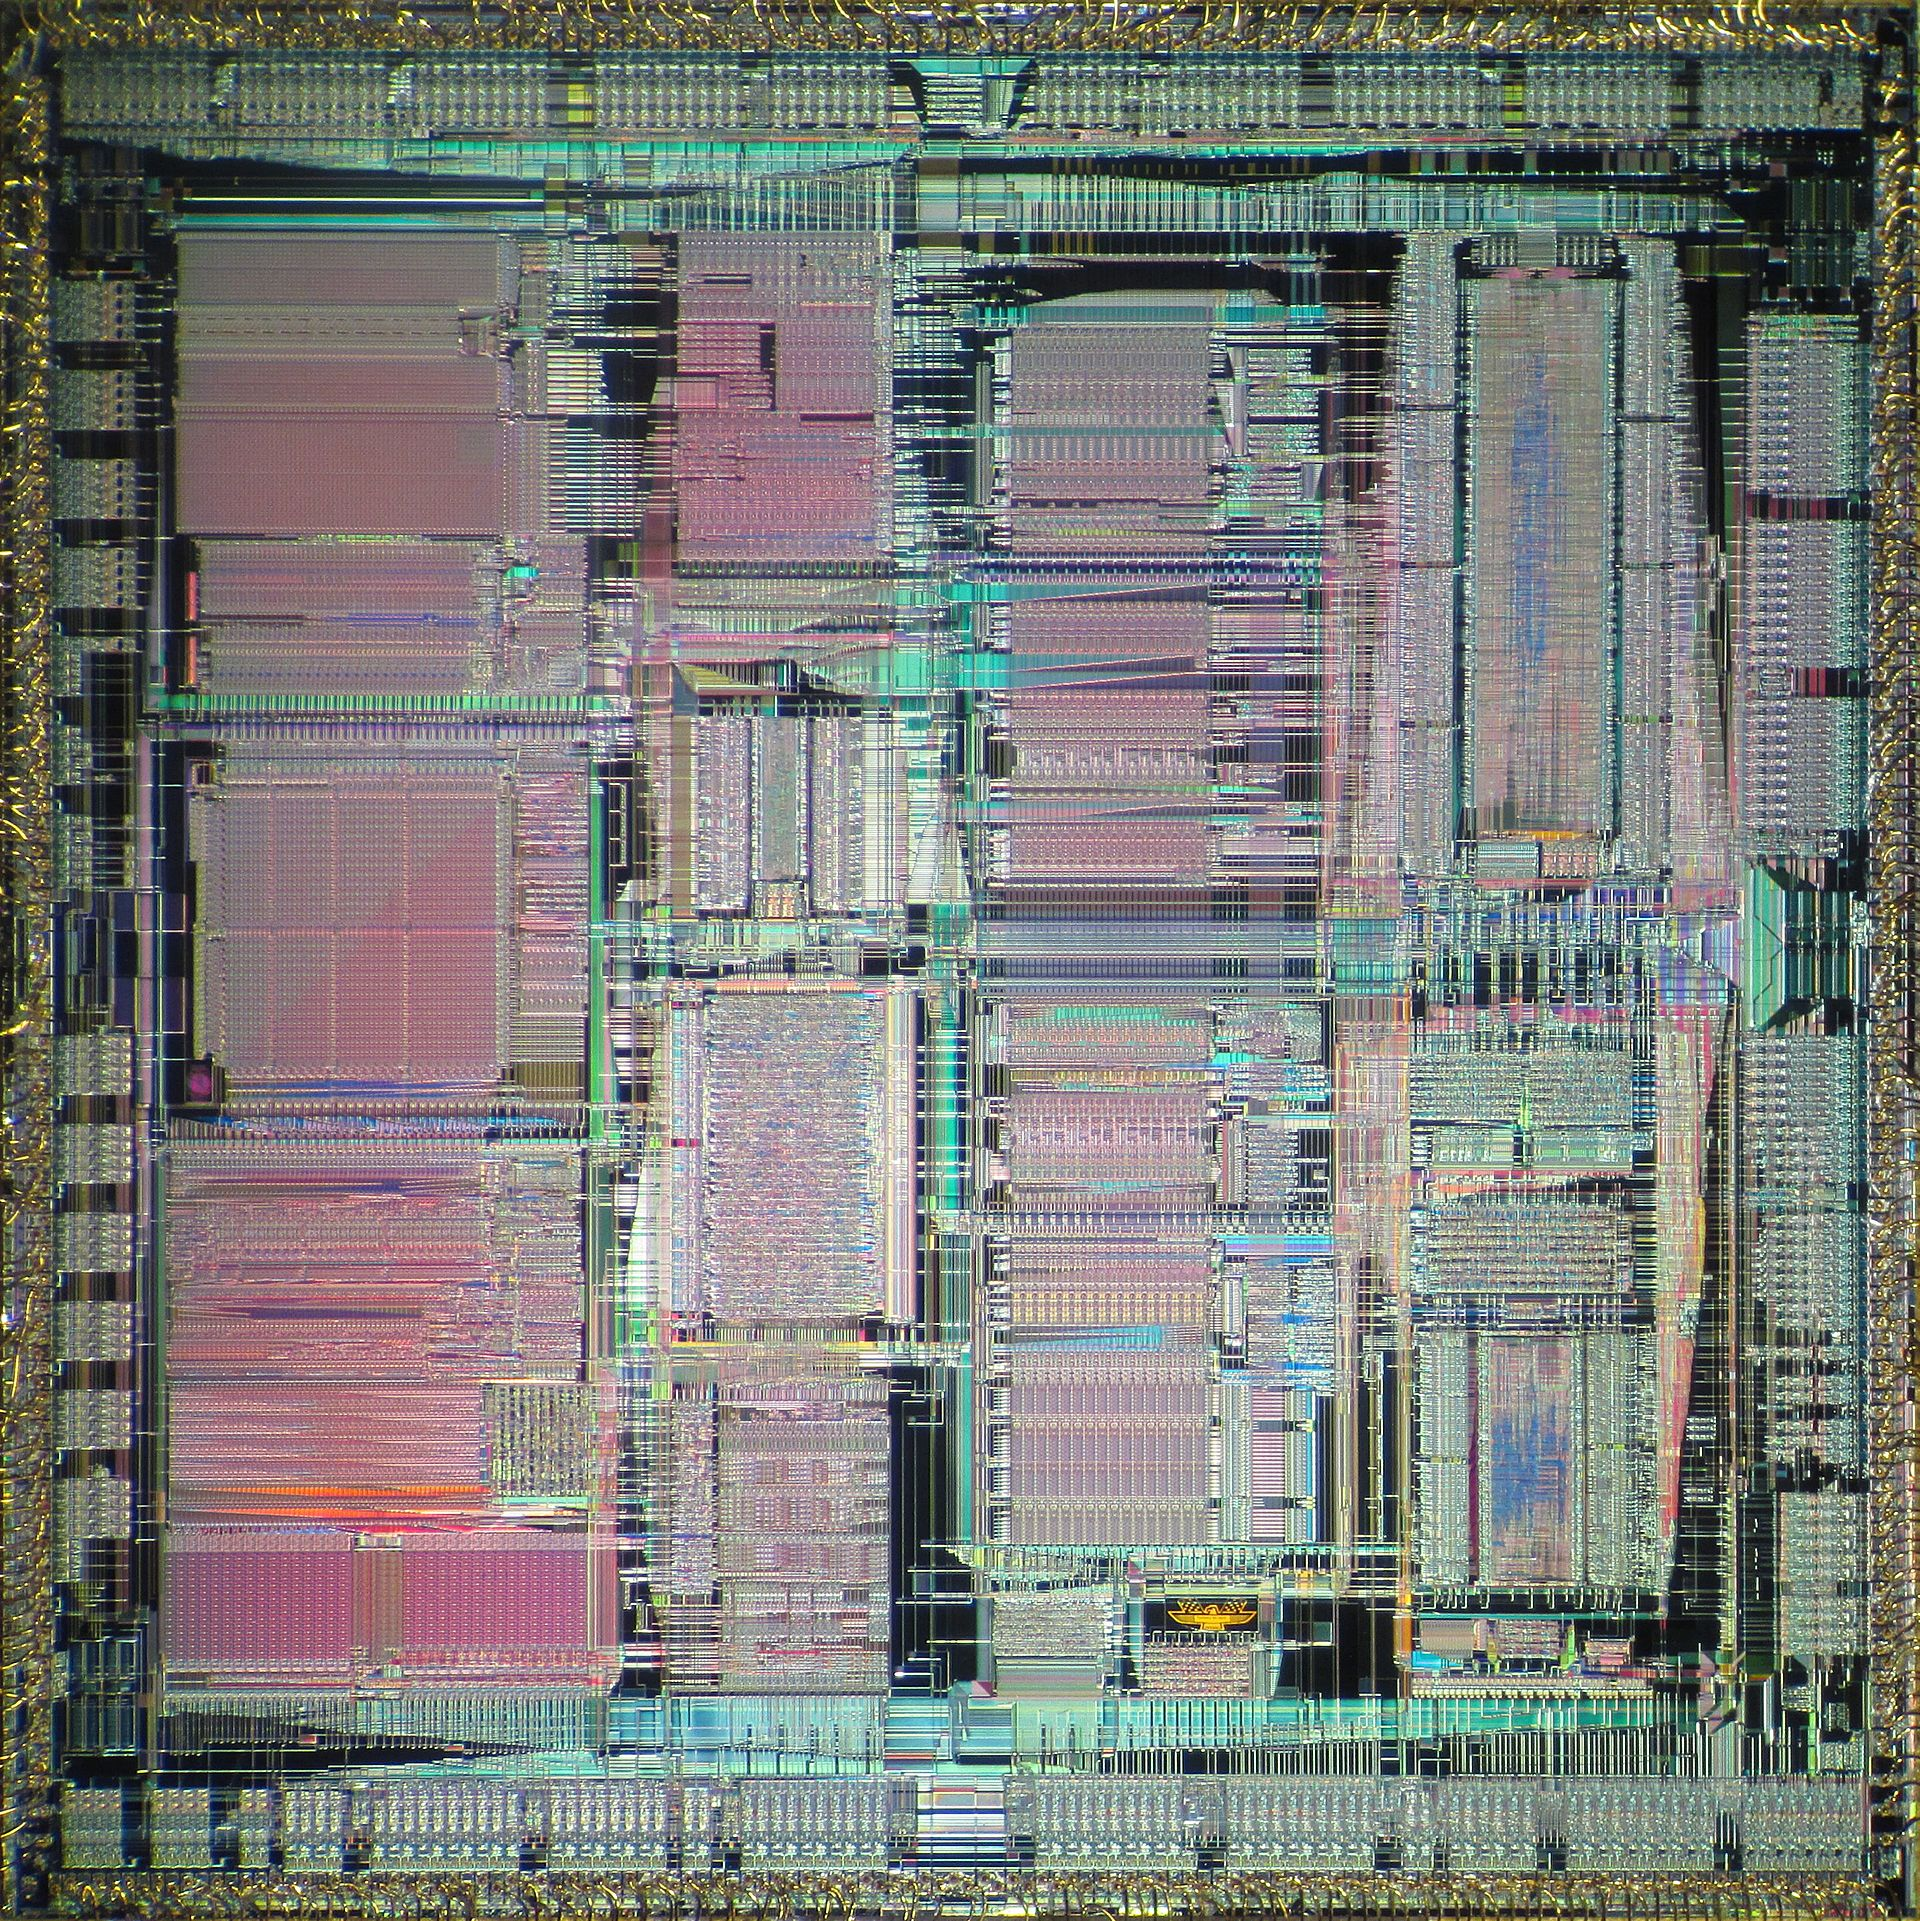 照片中包含了帕 7100、PA-RISC、PA-7100、惠普、精簡指令集計算機